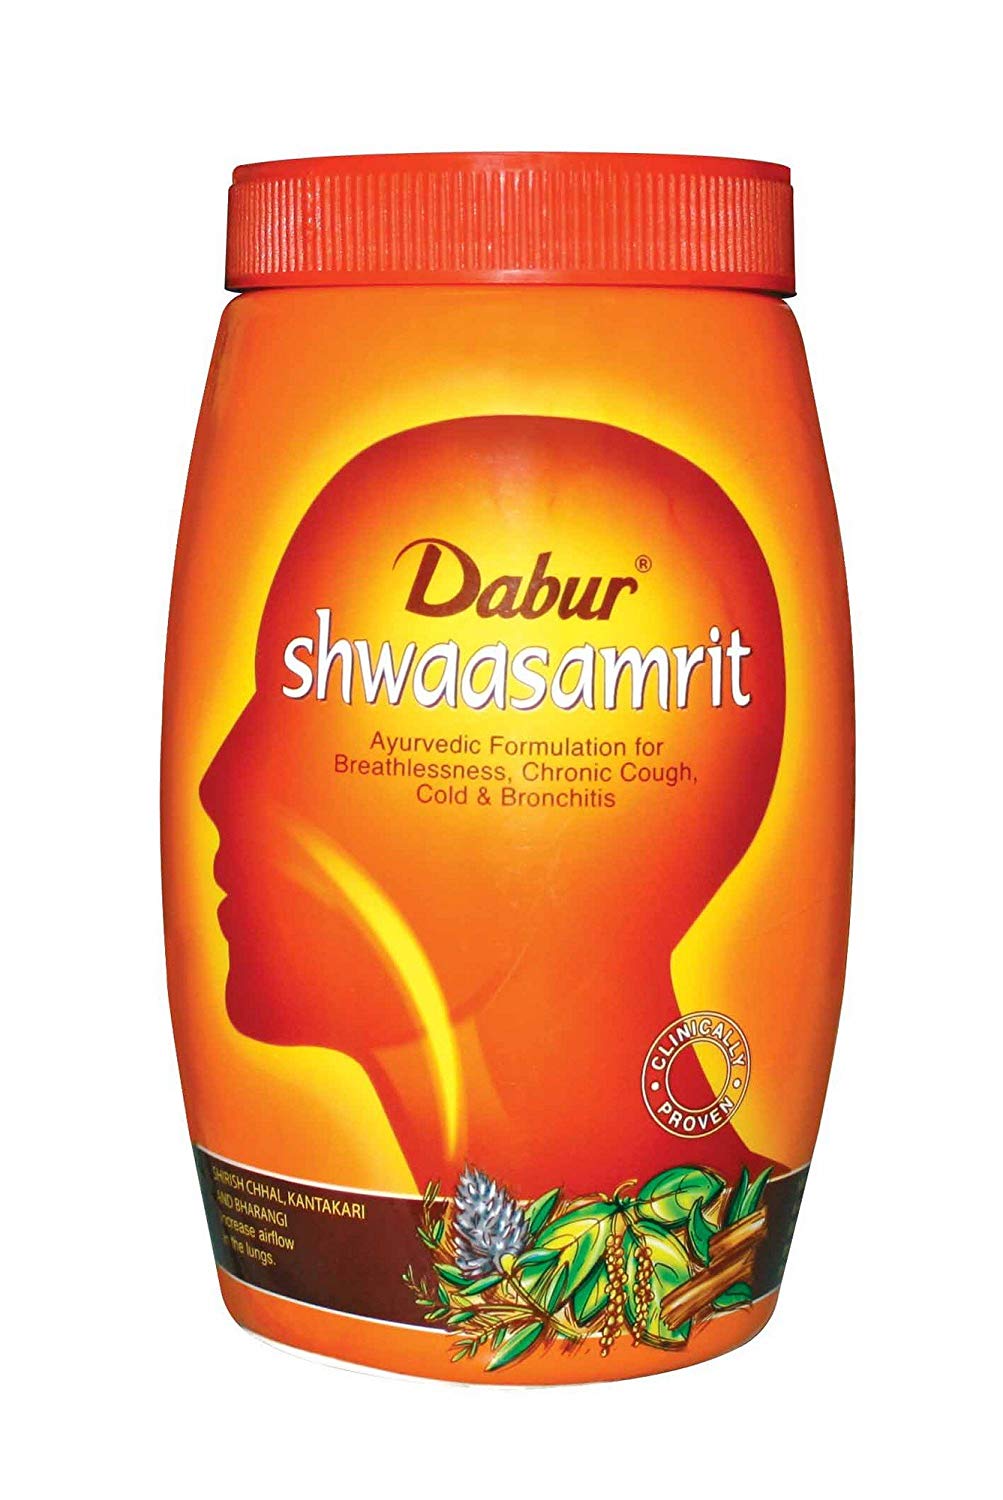 Shop Dabur Shwaasamrit 100g at price 124.00 from Dabur Online - Ayush Care